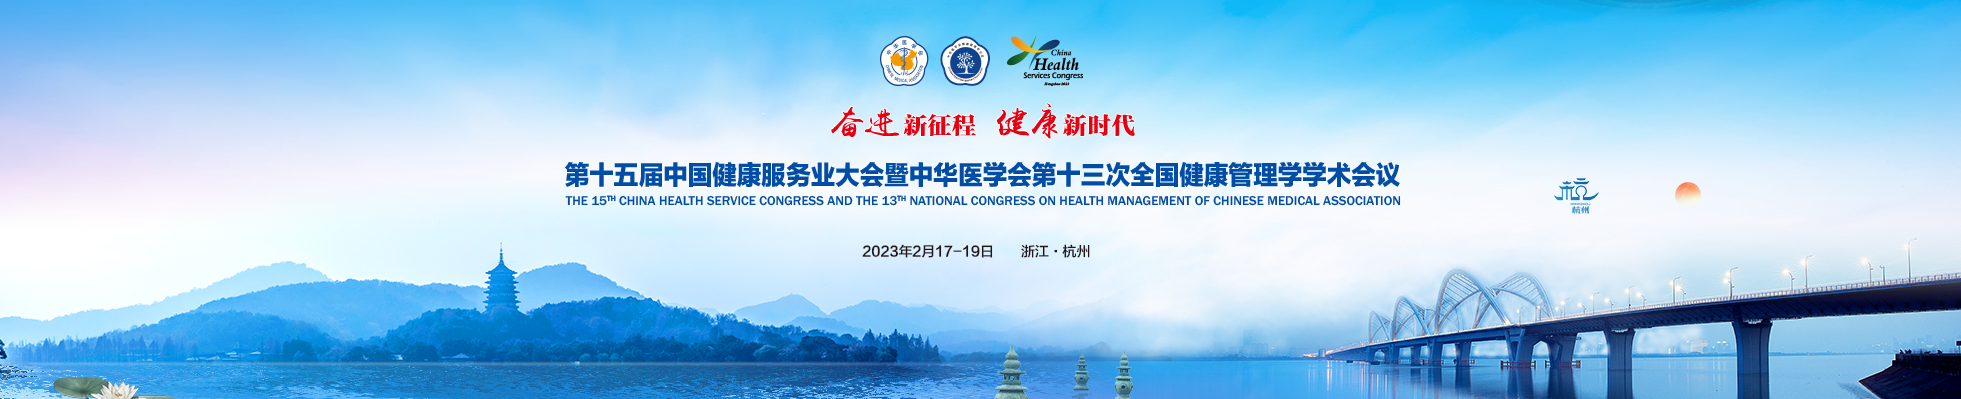 第十五届中国健康服务业大会暨中华医学会第十三次全国健康管理学学术会议